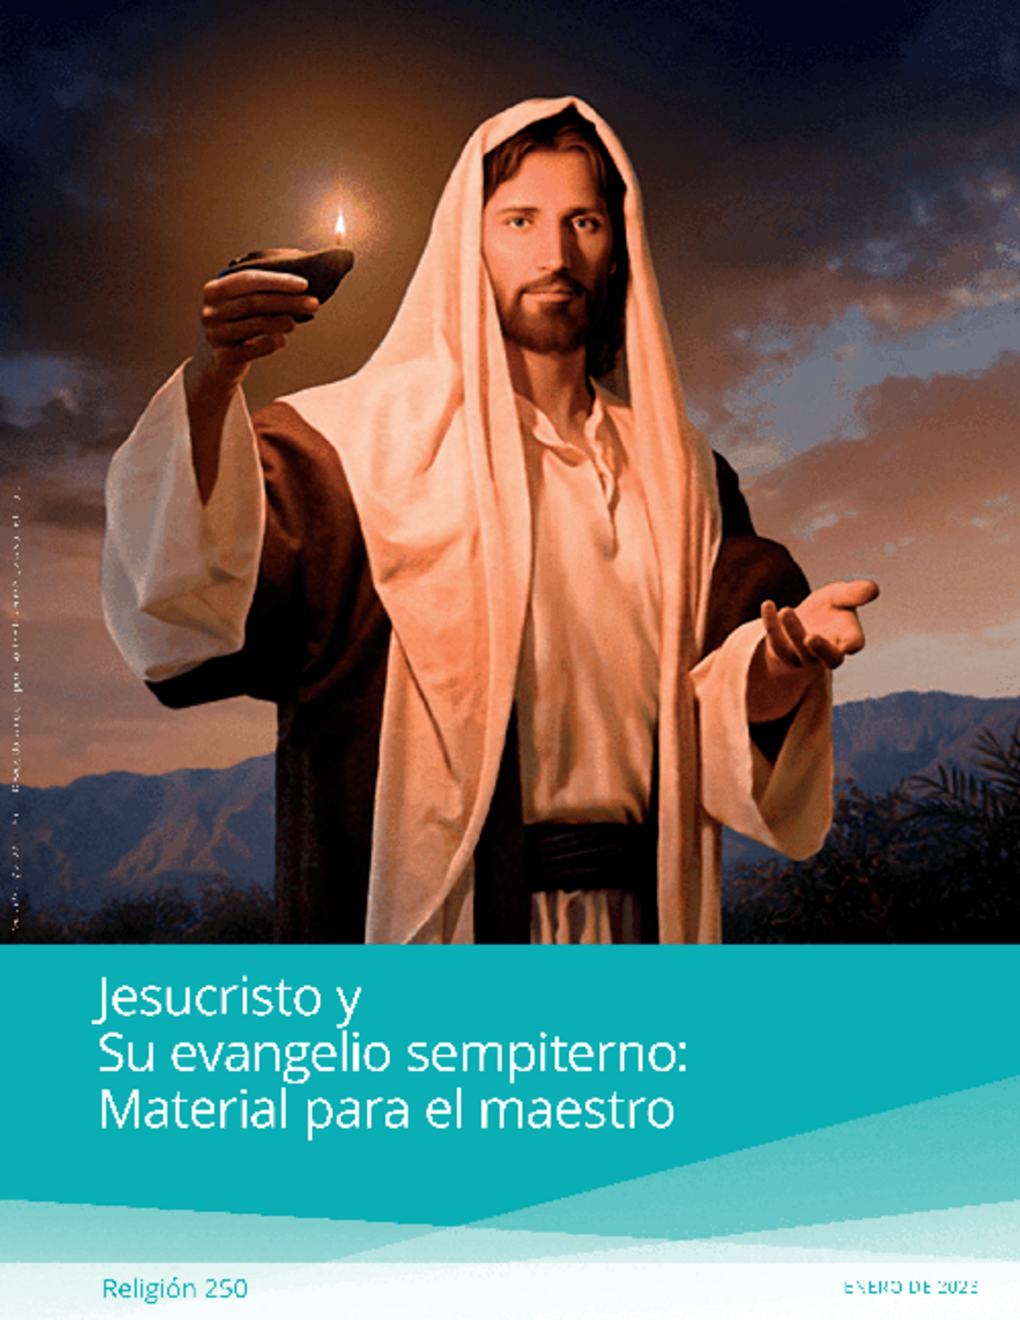 Jesucristo y Su evangelio sempiterno: Material para el maestro (Religión 250)